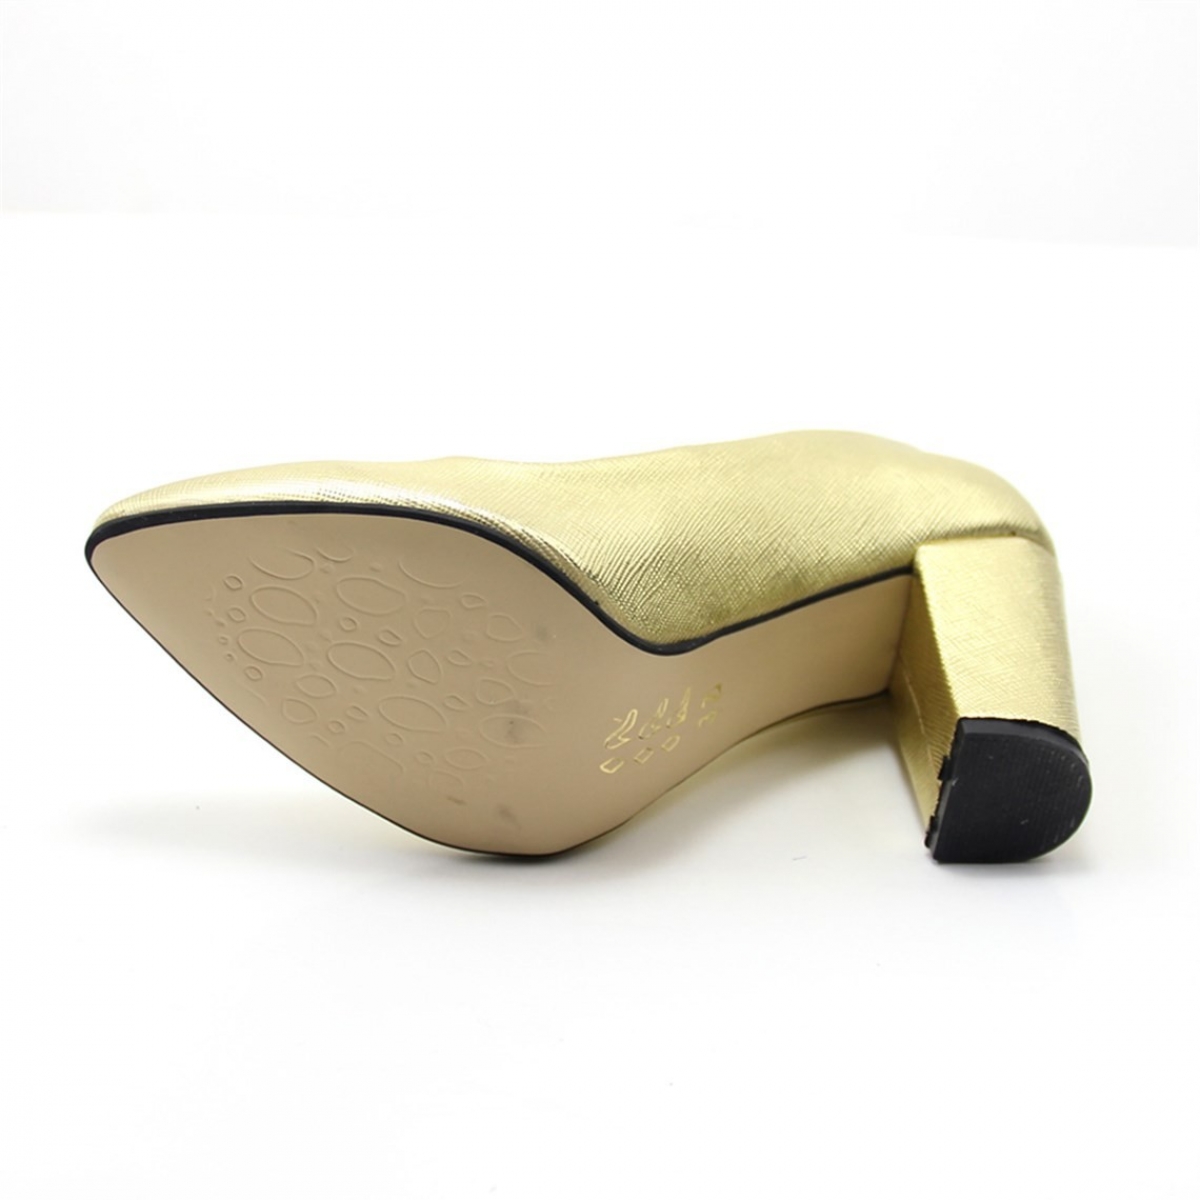 Flo Günlük Topuklu Altın Kadın Ayakkabı N-2600. 4